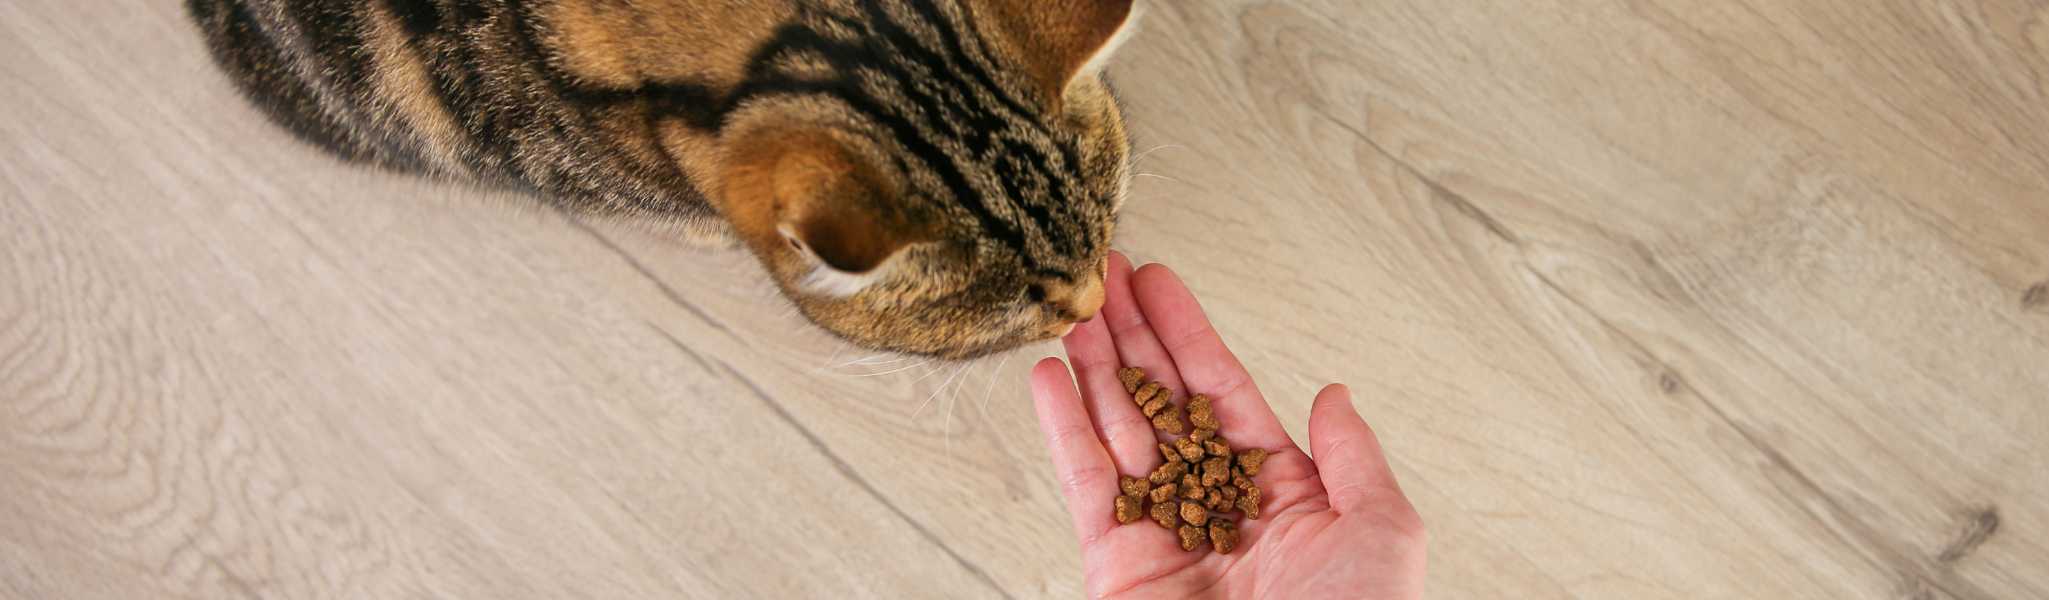 Croquettes Sensitive Cat Low Grain Wolfood 10kg